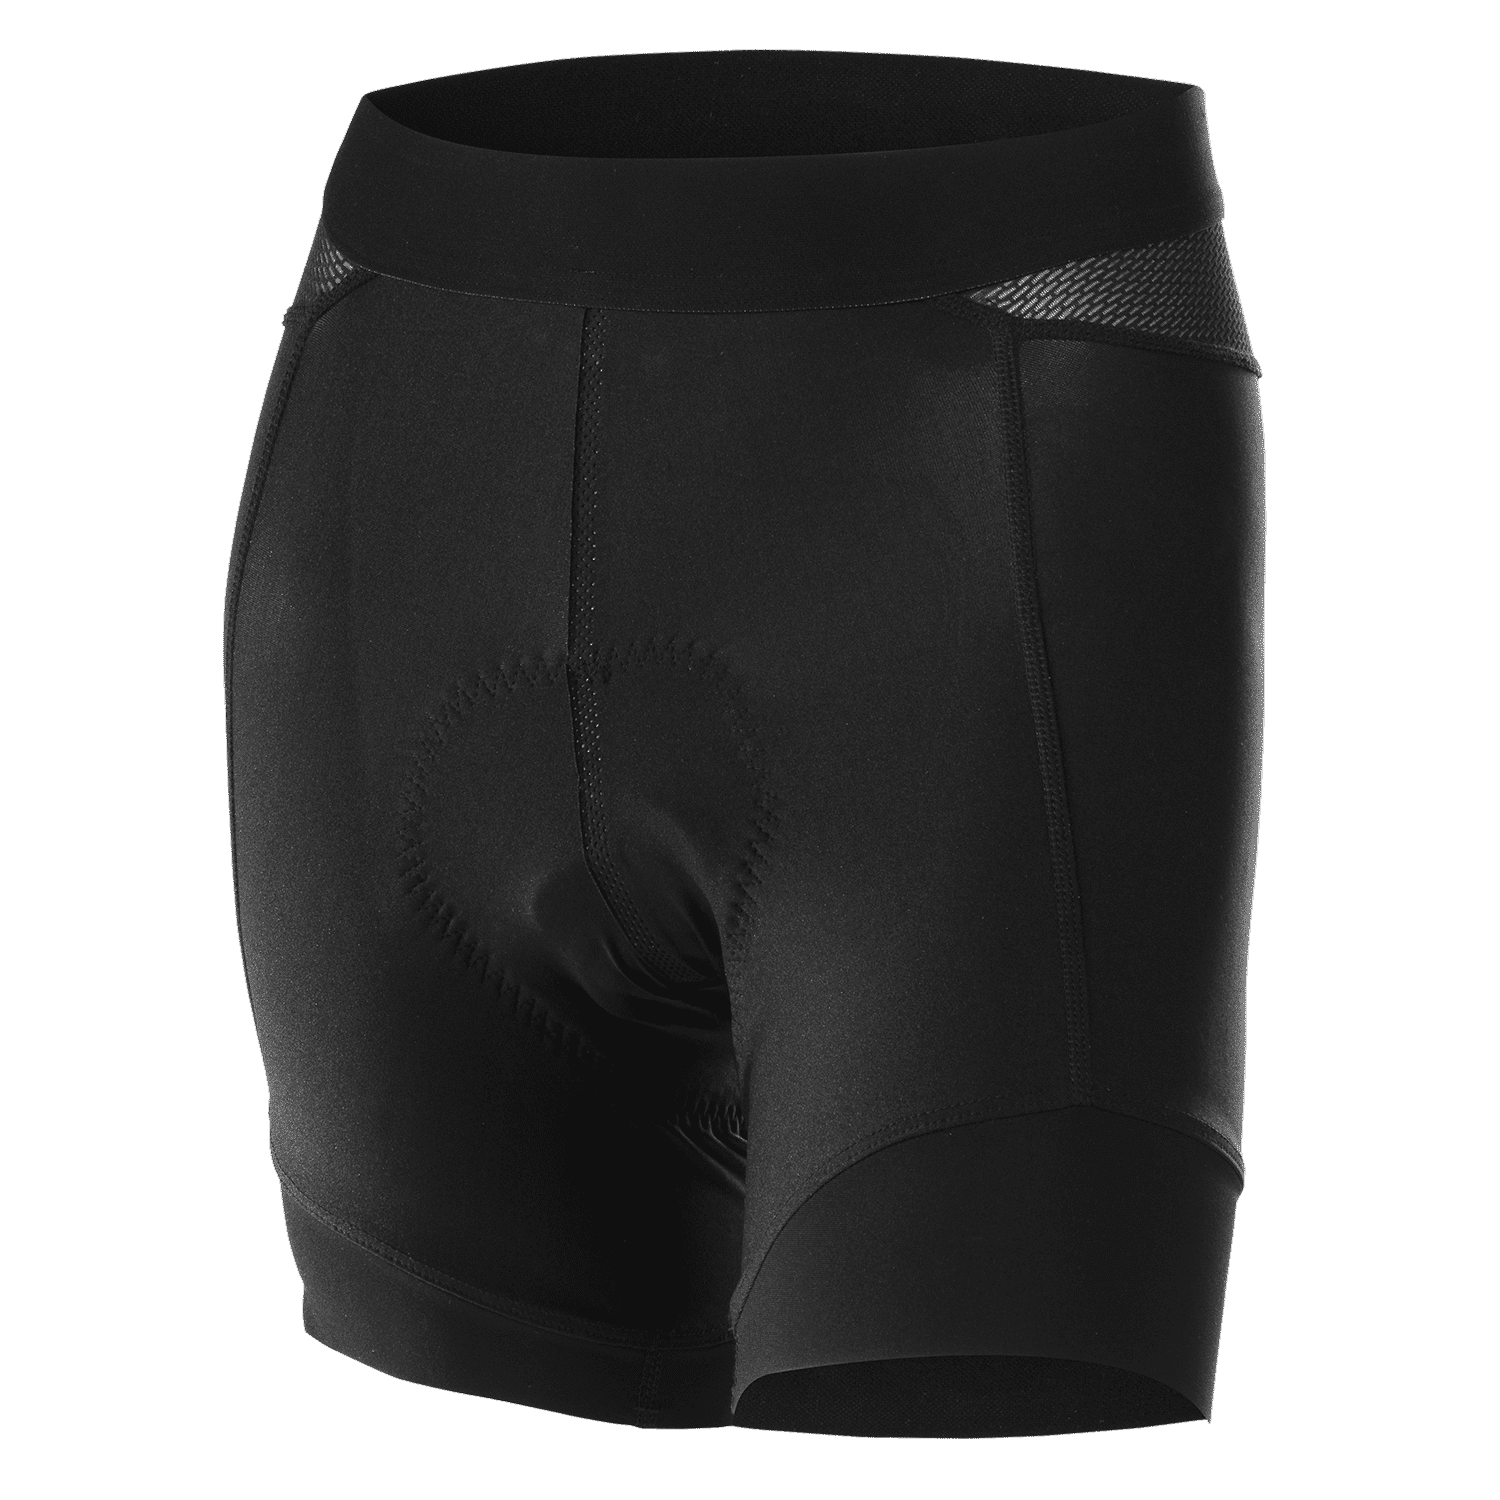 Löffler Cycling Shorts Light Hotbond - Underwear - Women's